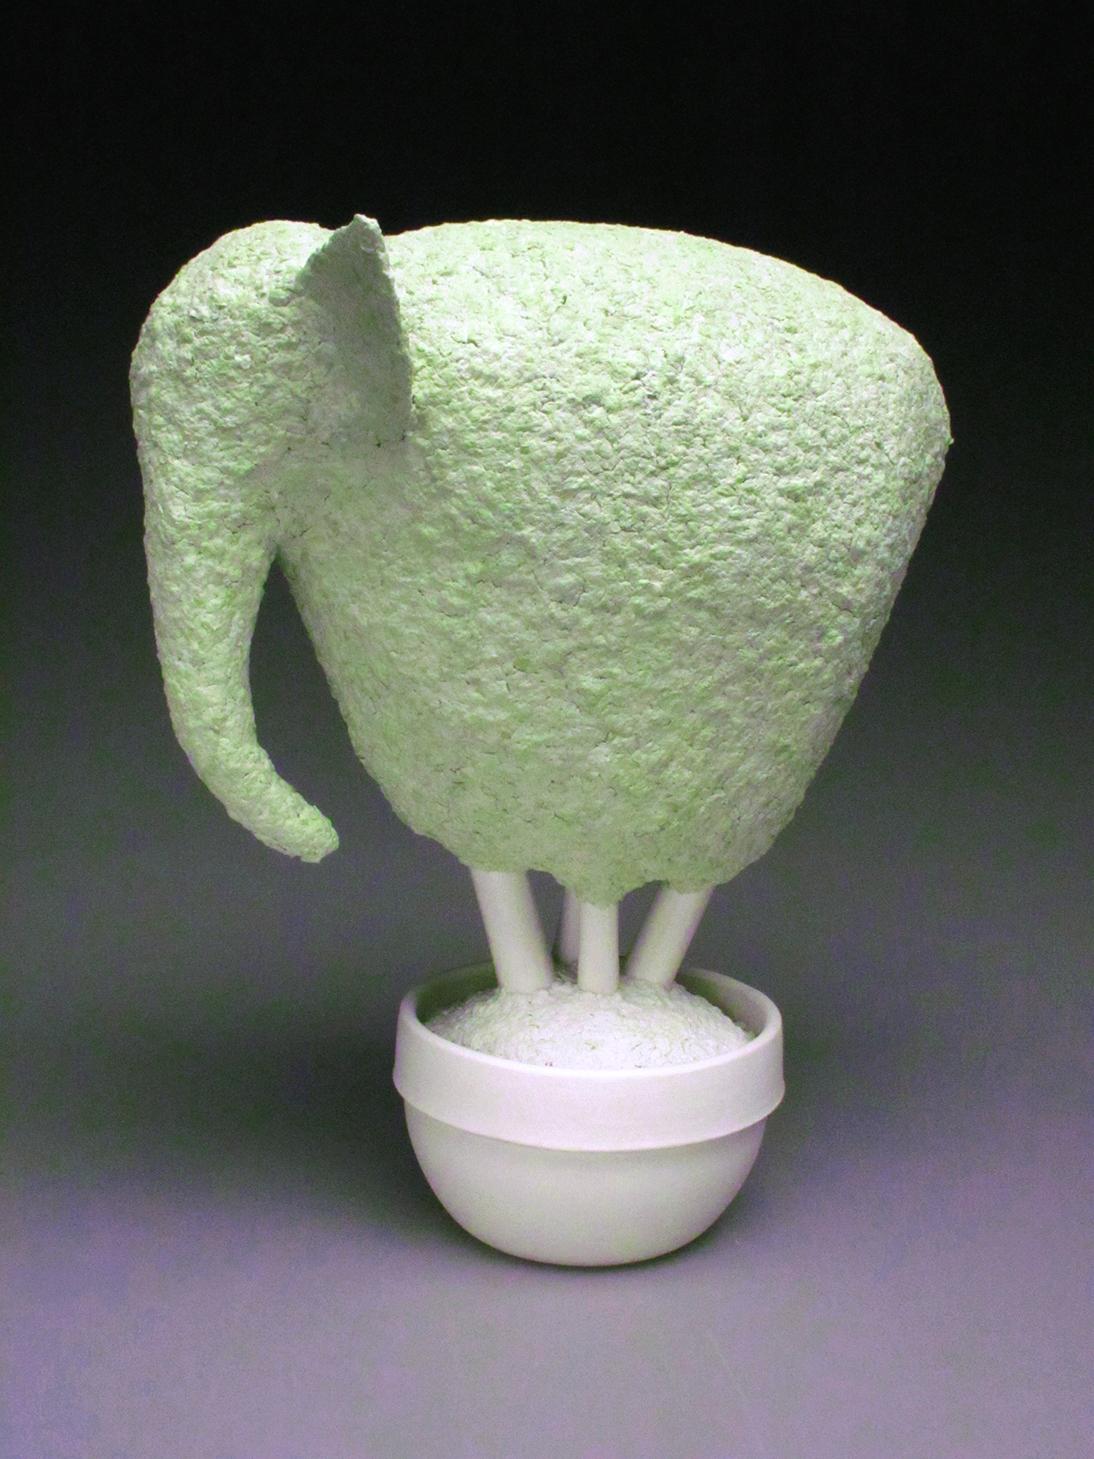 Cette magnifique sculpture topiaire d'éléphant en papier mâché et porcelaine vert tendre a été créée par l'artiste new-yorkaise Bethany Krull.  La partie pot de la sculpture est tournée en plusieurs parties tandis que le topiaire d'éléphant possède